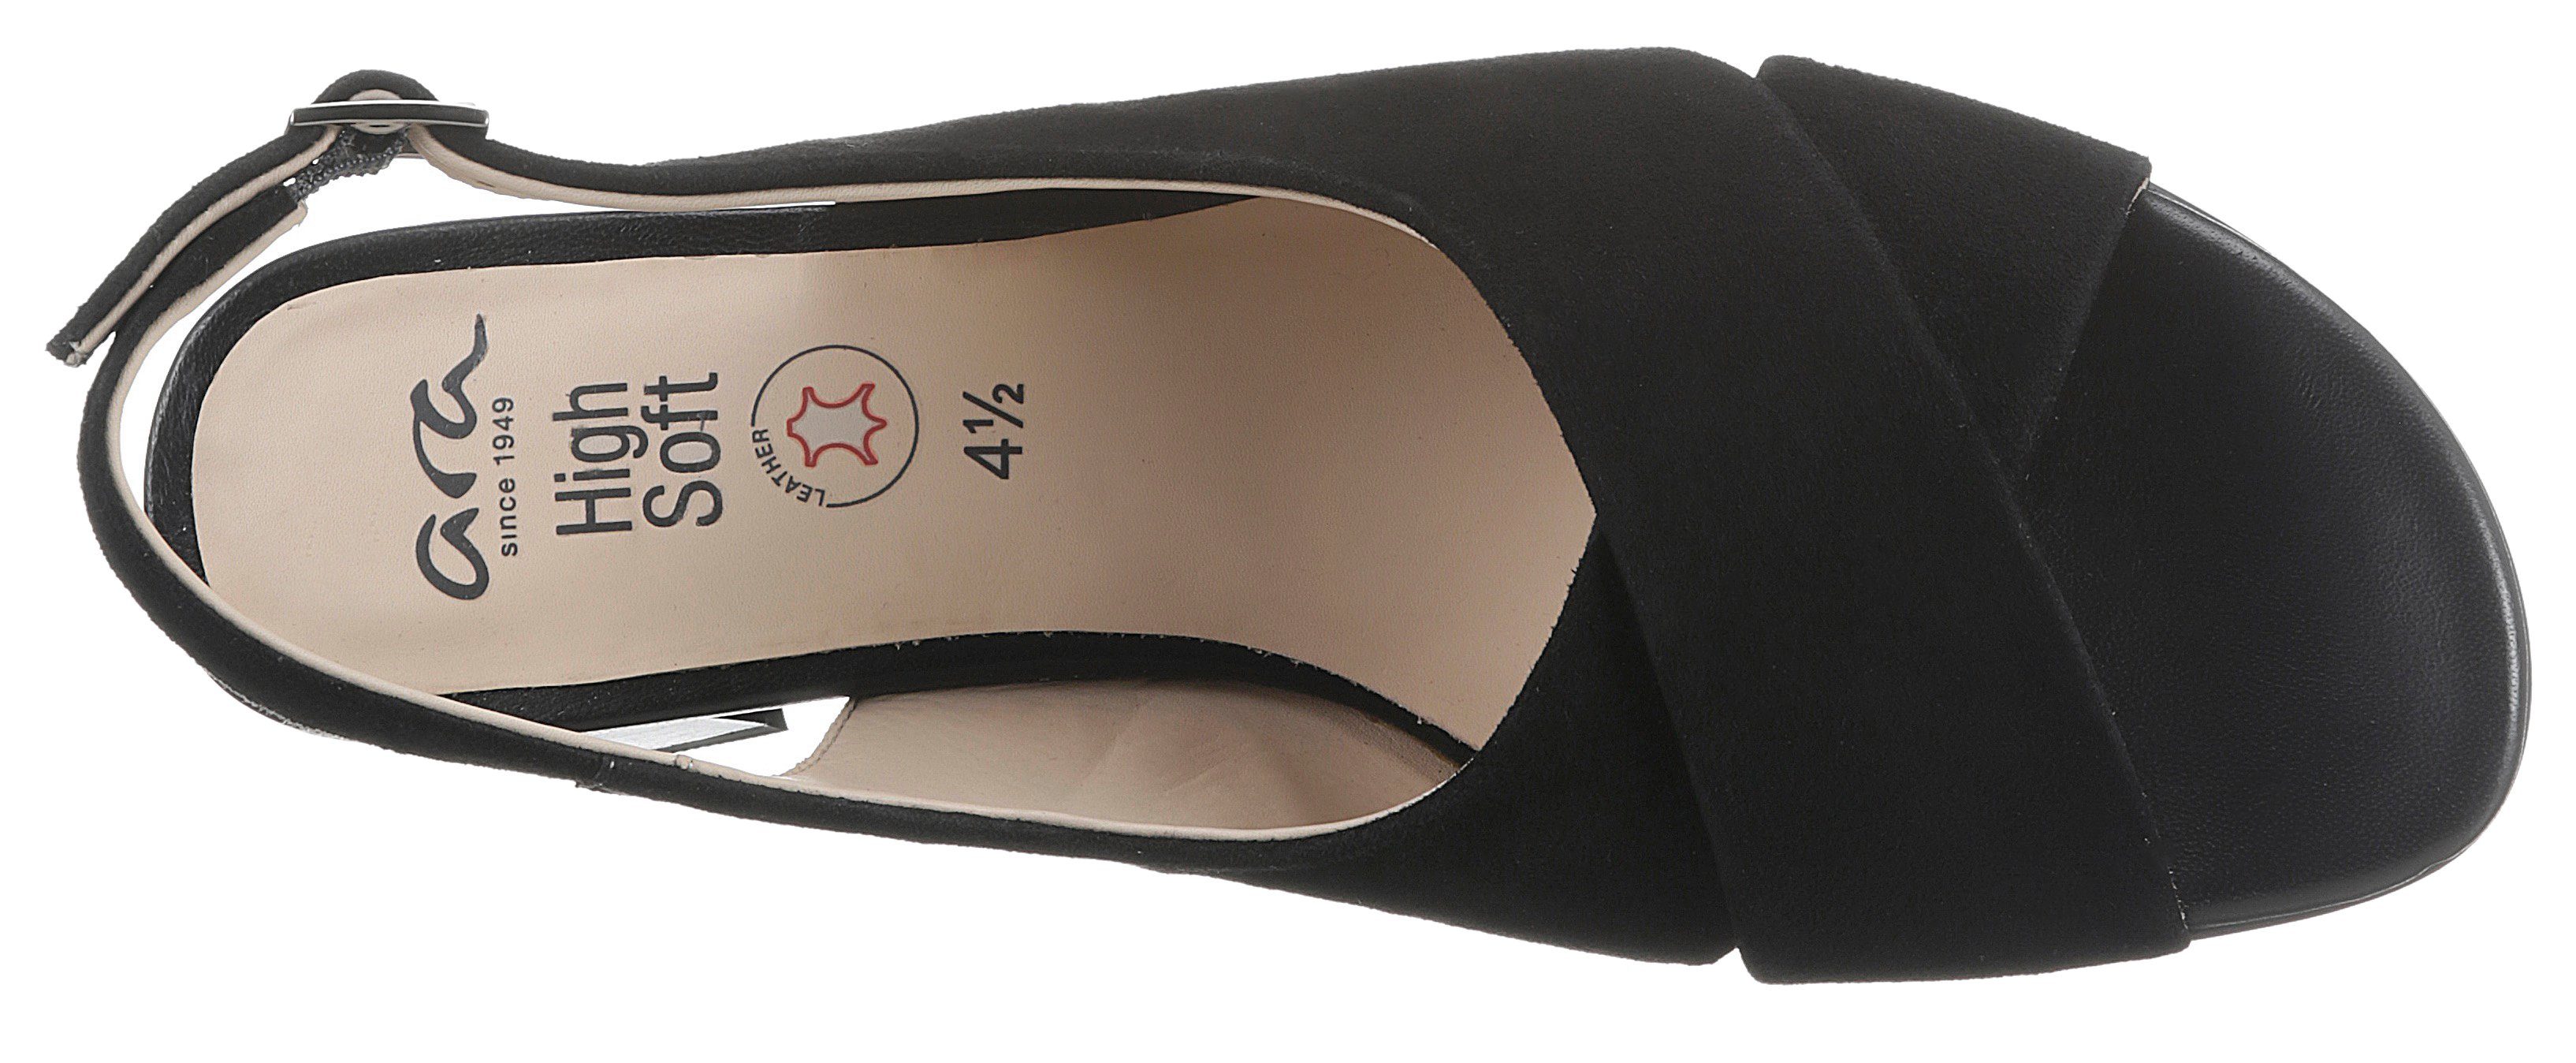 Riemchen, Sandalette mit G-Weite Ara verstellbarem PRATO schwarz 047990